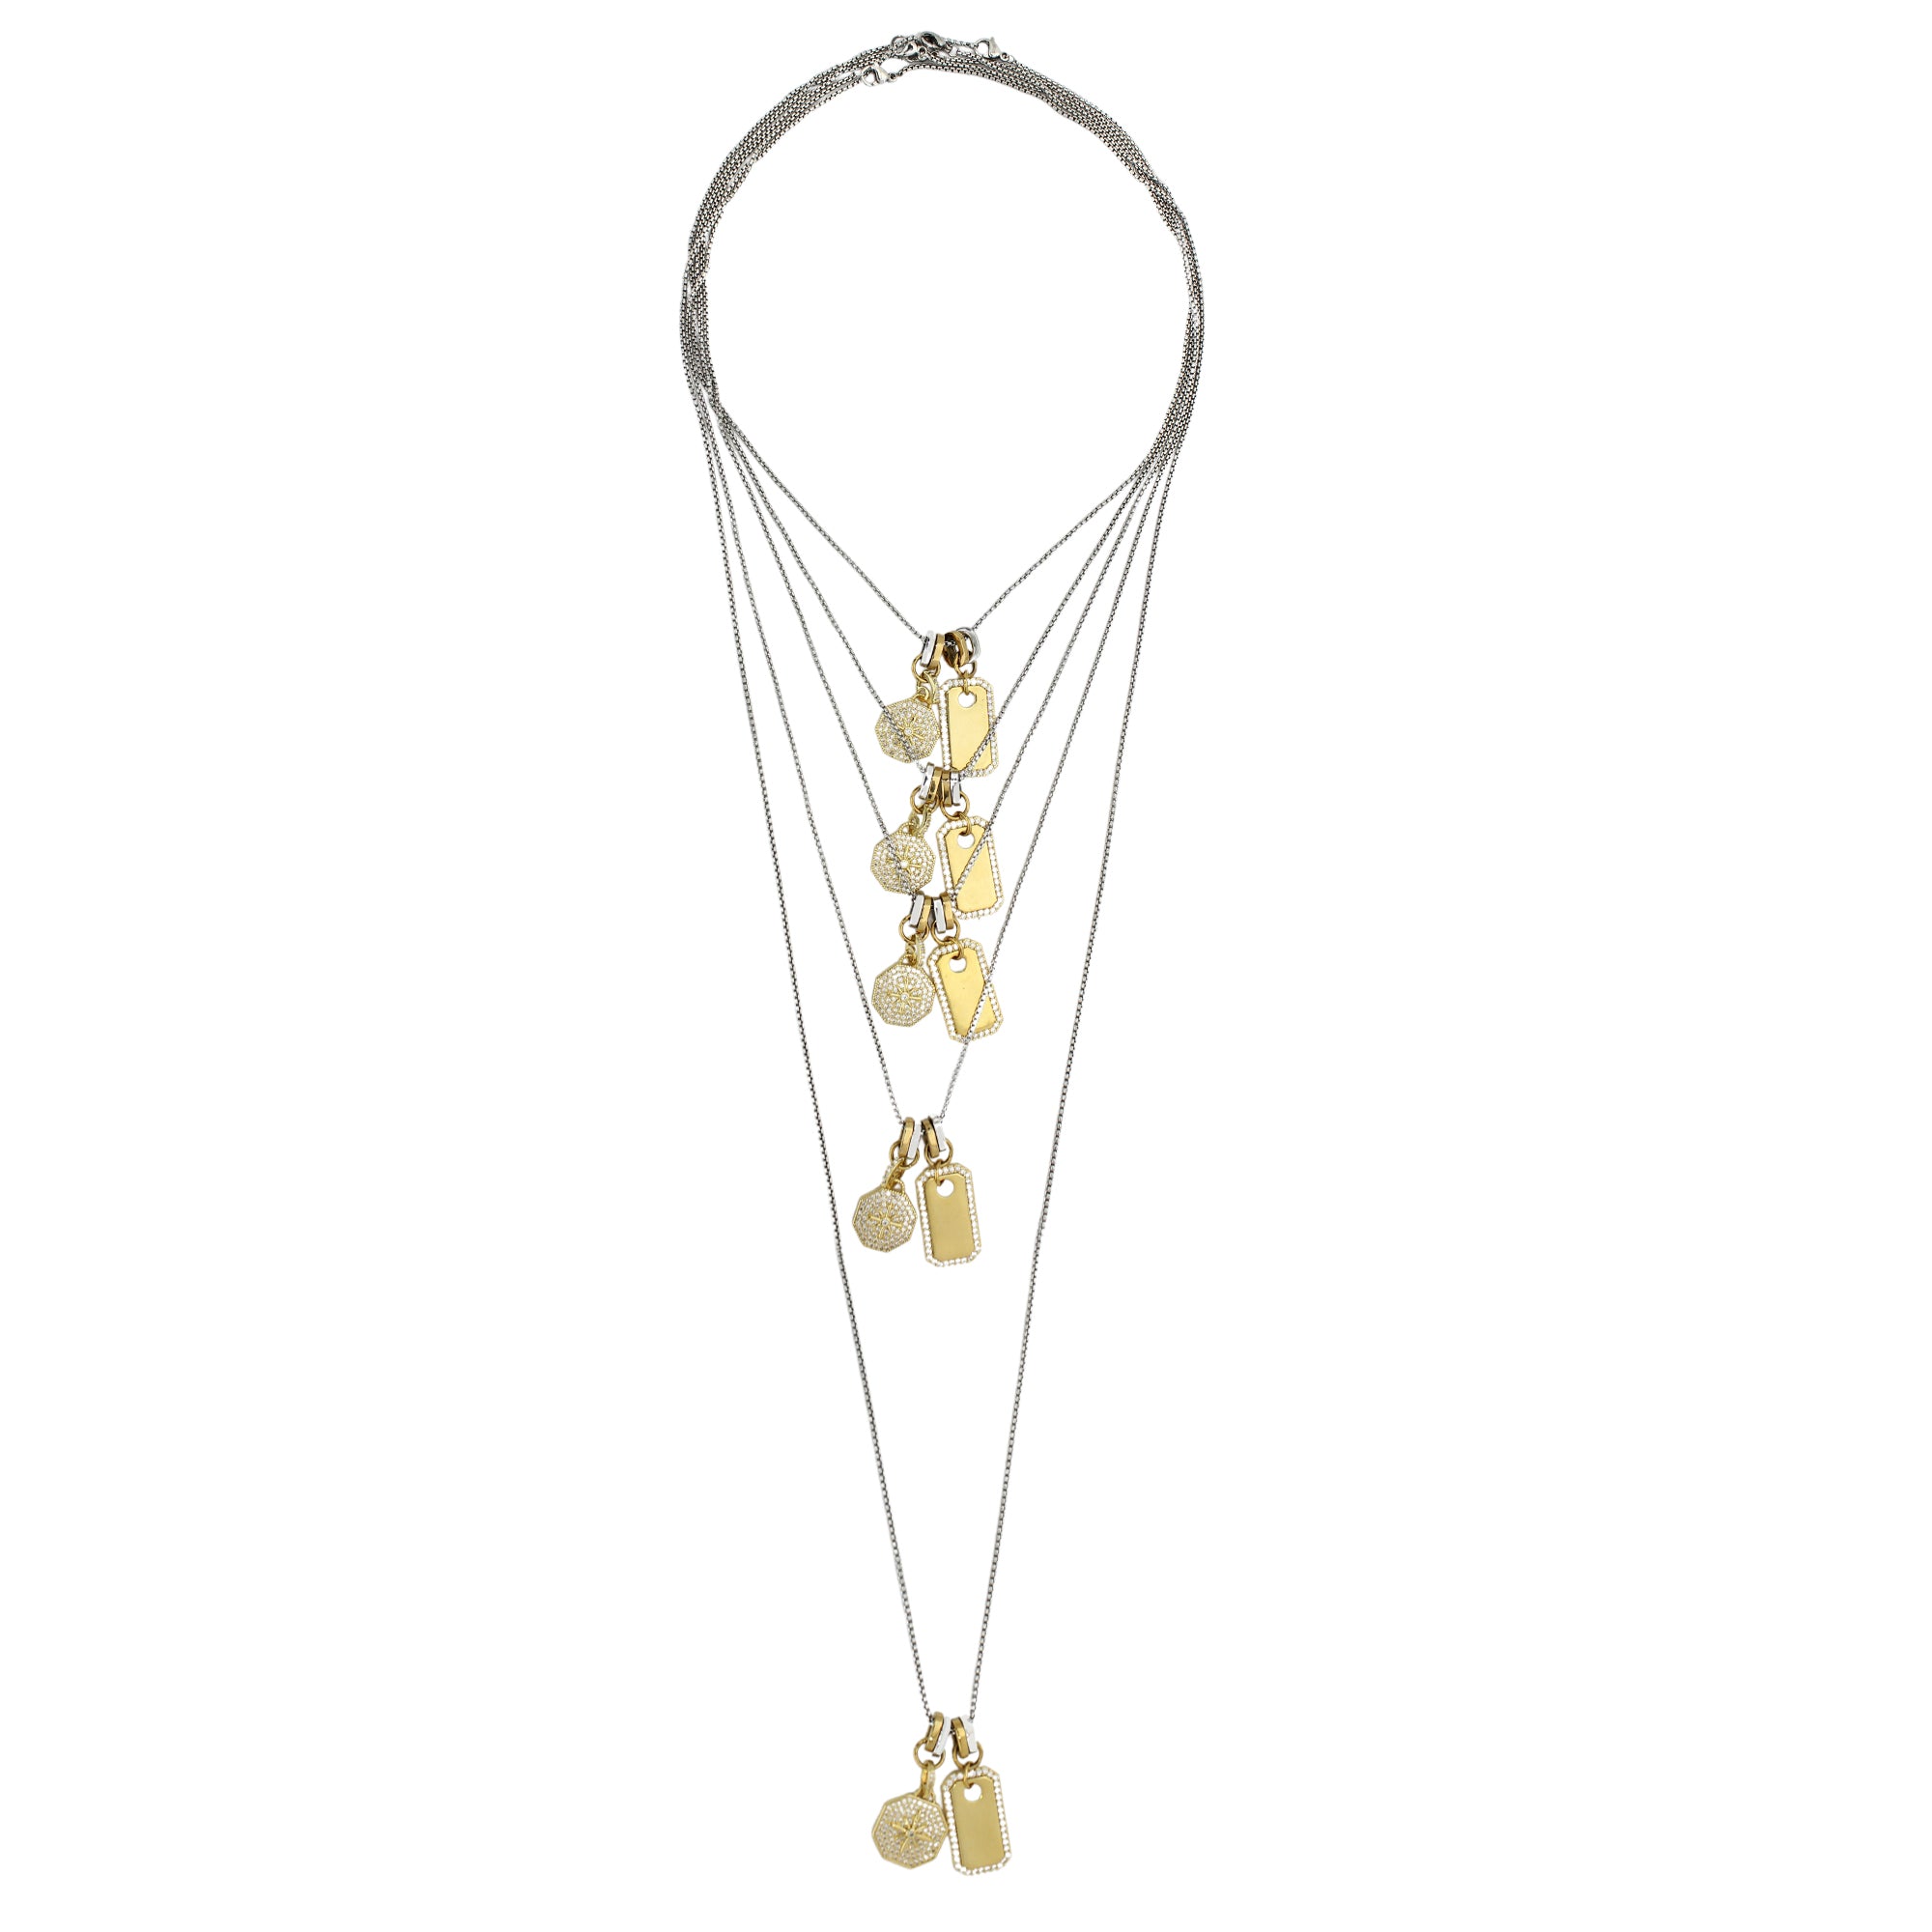 PANDORA Clasp Sterling Silver Charm Necklace | PANDORA | BeCharming.com